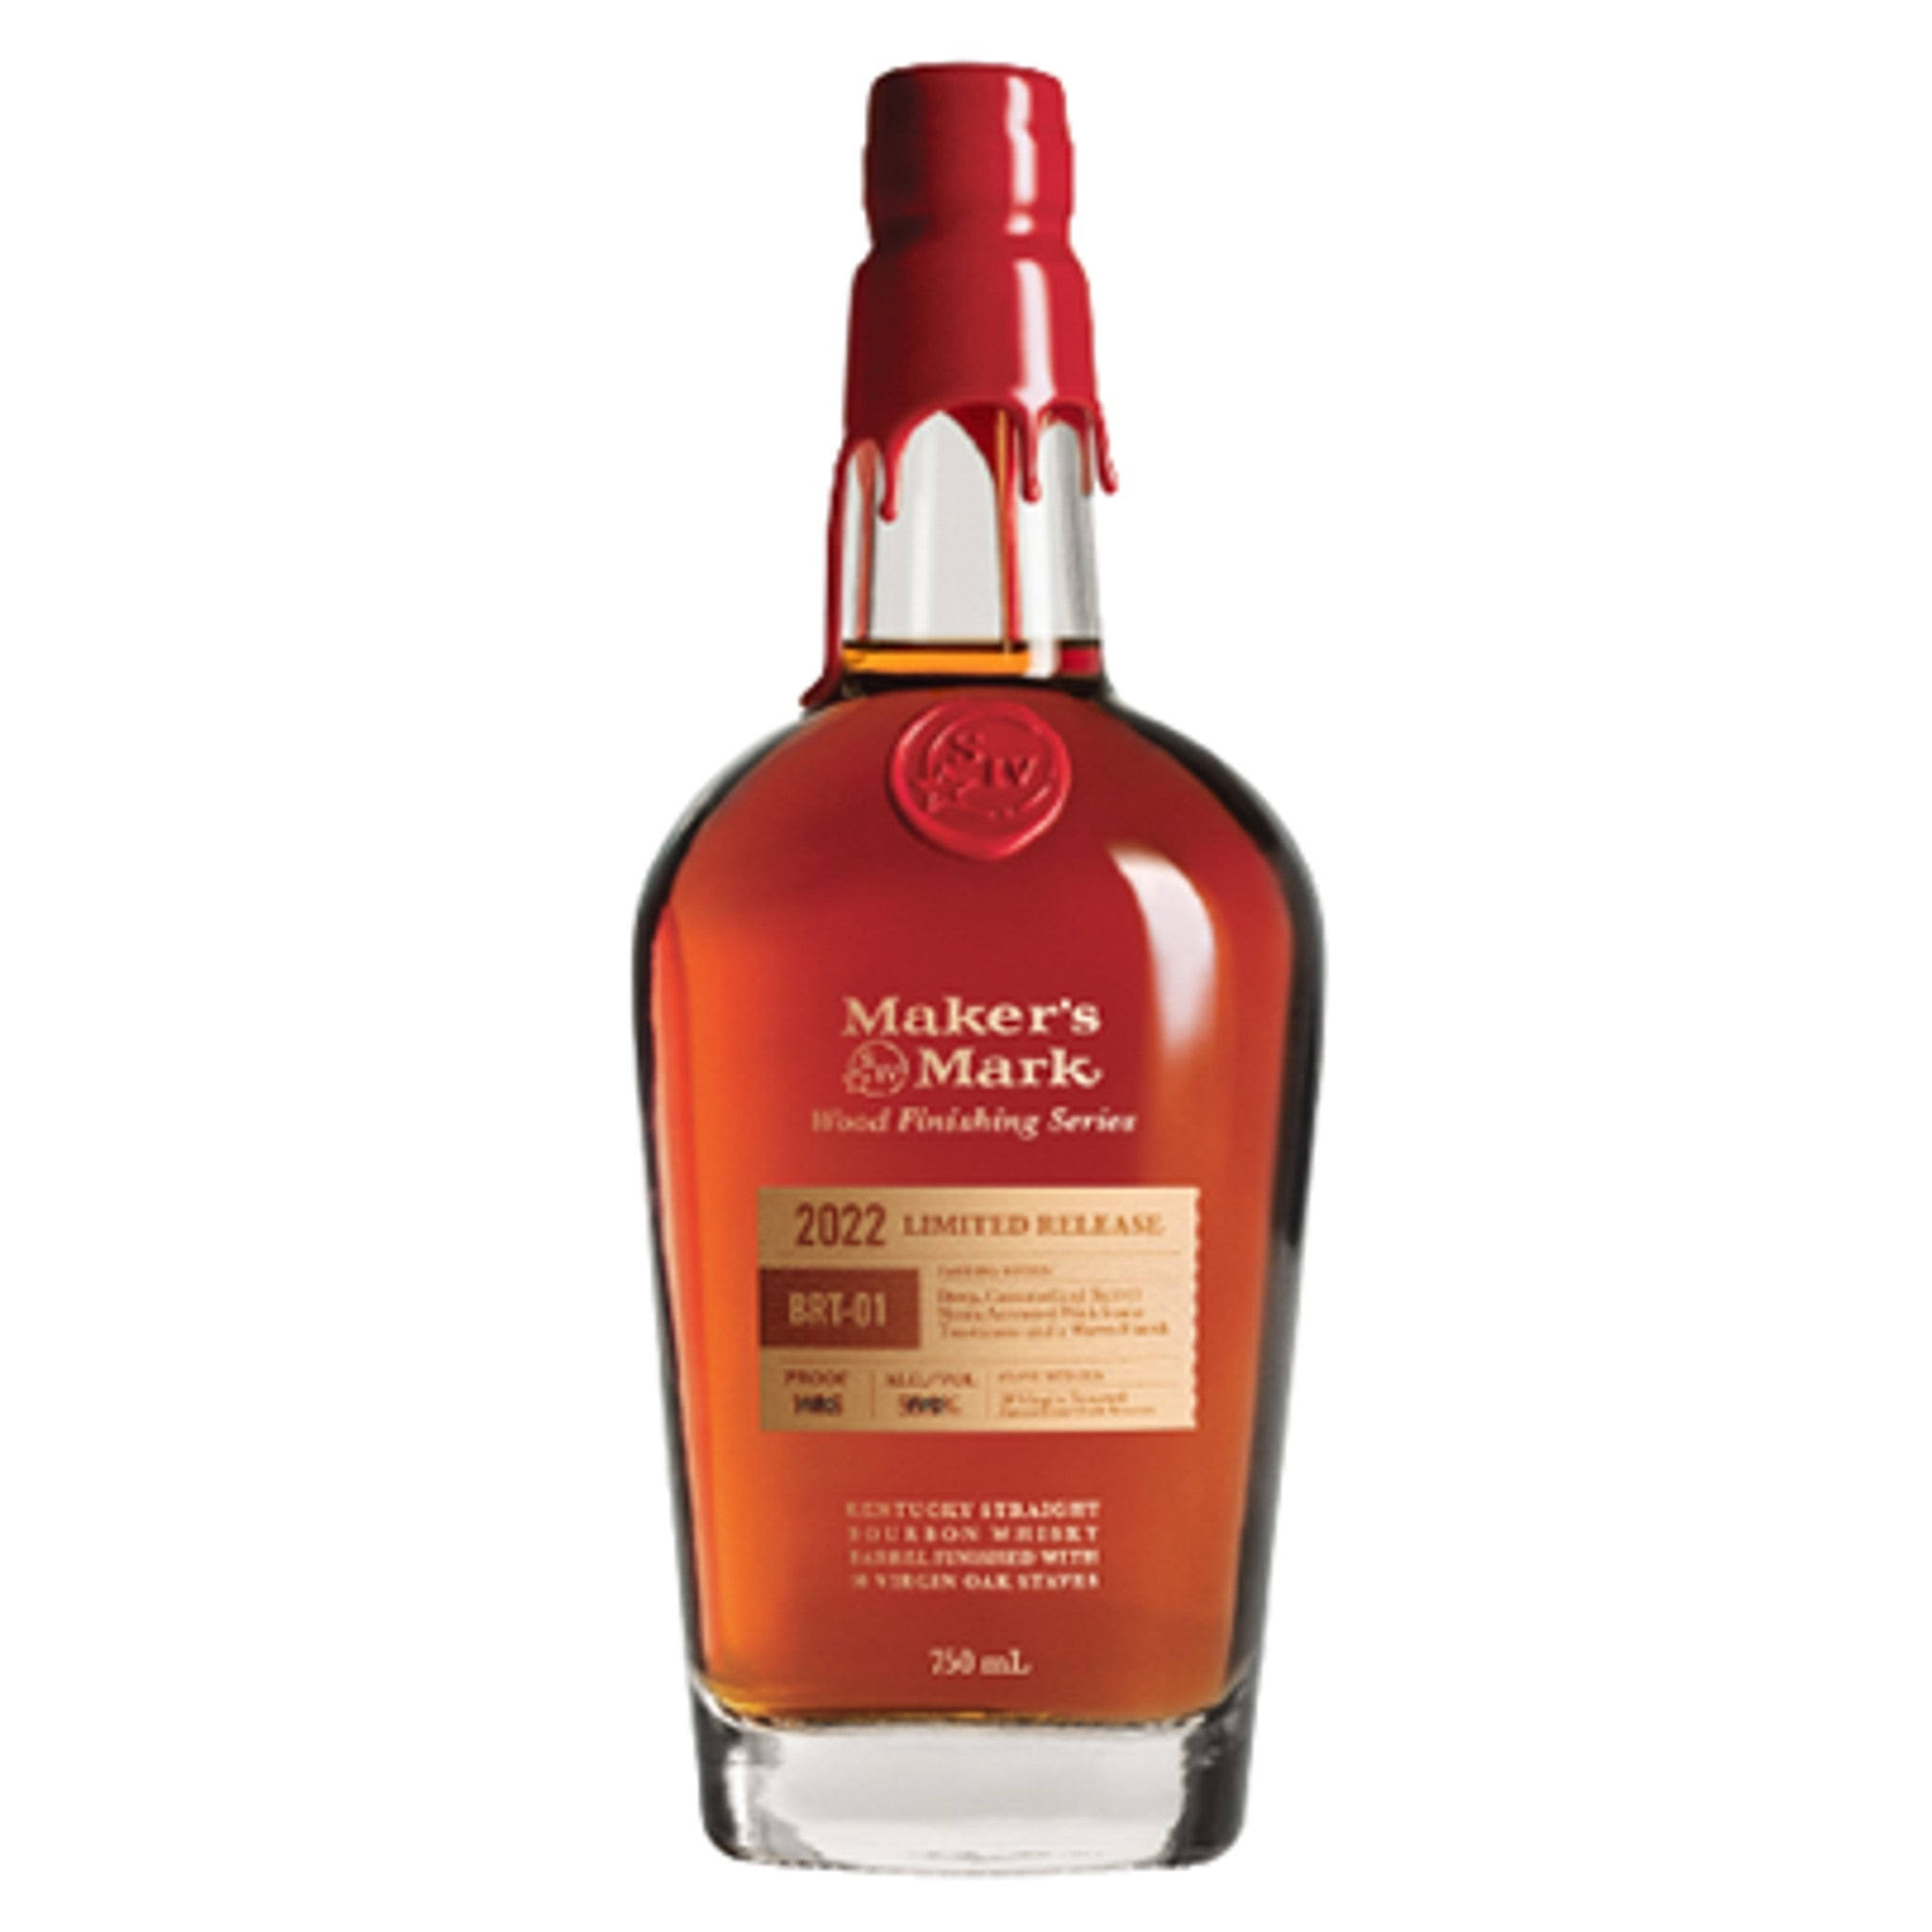 Maker's Mark BRT-02 Wood Finishing Series Limited Release Kentucky Straight Bourbon Whisky 2022 750ml Bottle